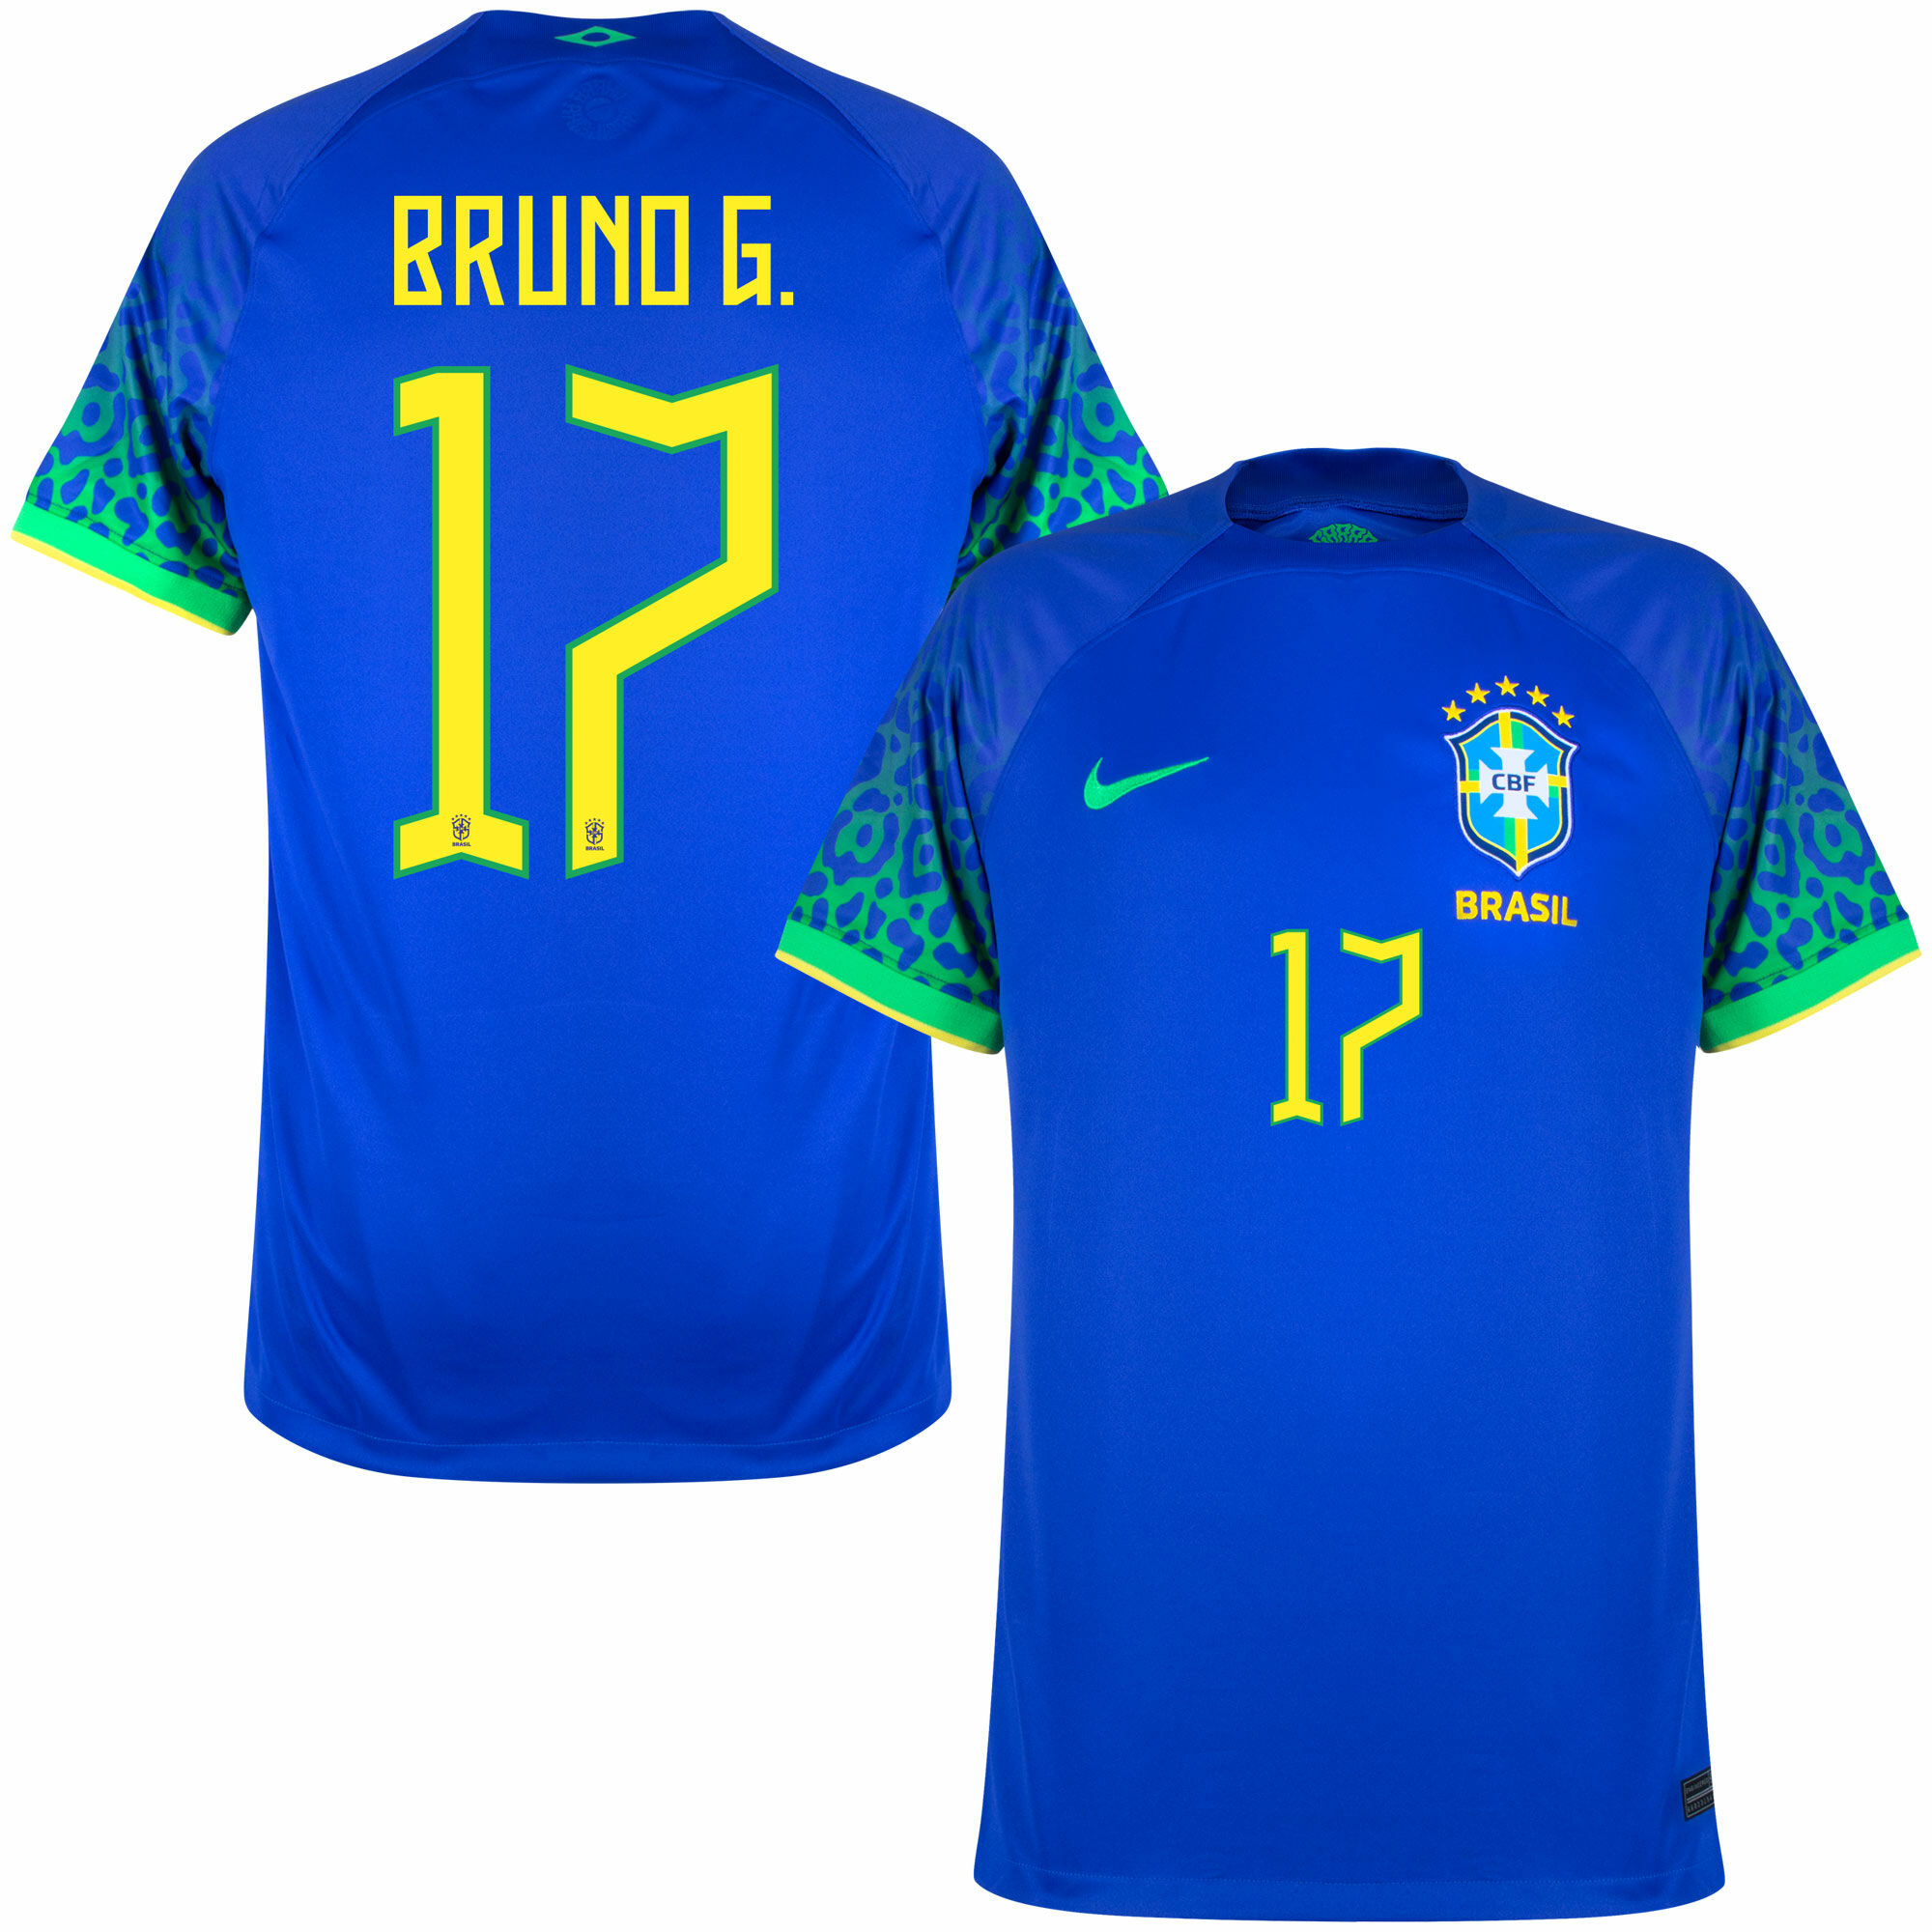 Brazílie - Dres fotbalový - Bruno Guimarães, číslo 17, oficiální potisk, sezóna 2022/23, modrý, venkovní